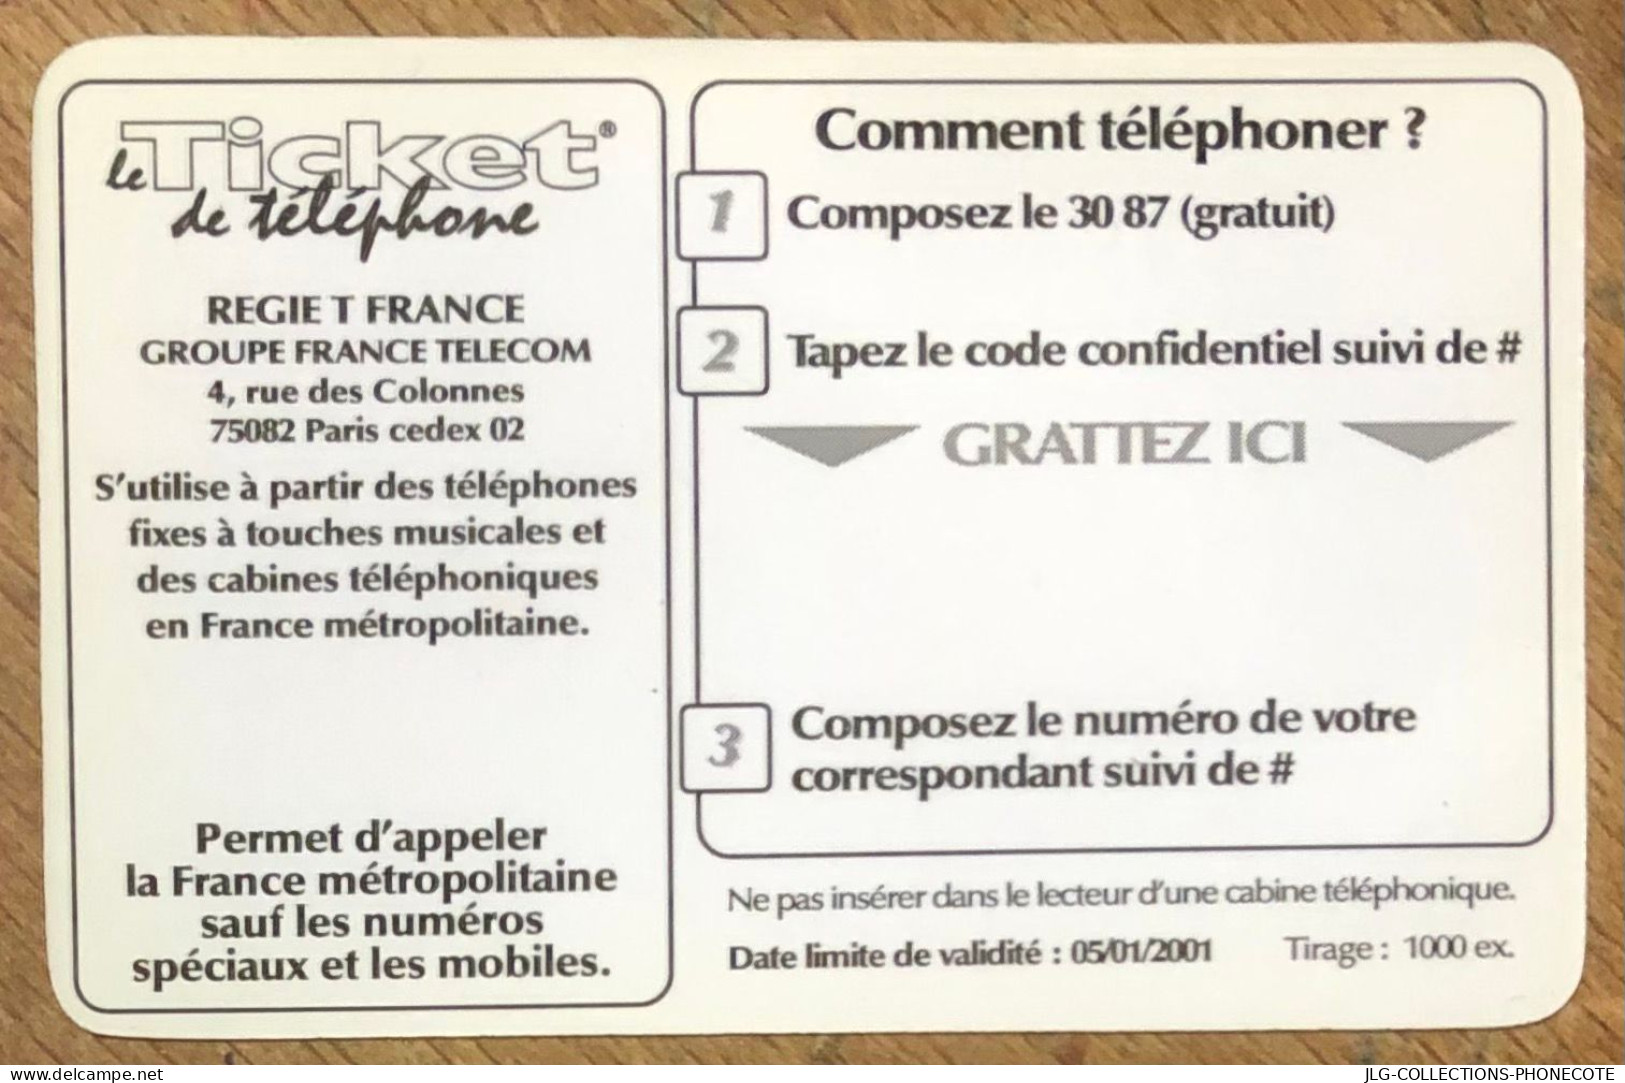 TICKET TÉLÉPHONE TOULOUSE SPÉCIMEN PREPAID PREPAYÉE CALLING CARD NO TELECARTE PHONECOTE SCHEDA PHONE CARD - Billetes FT